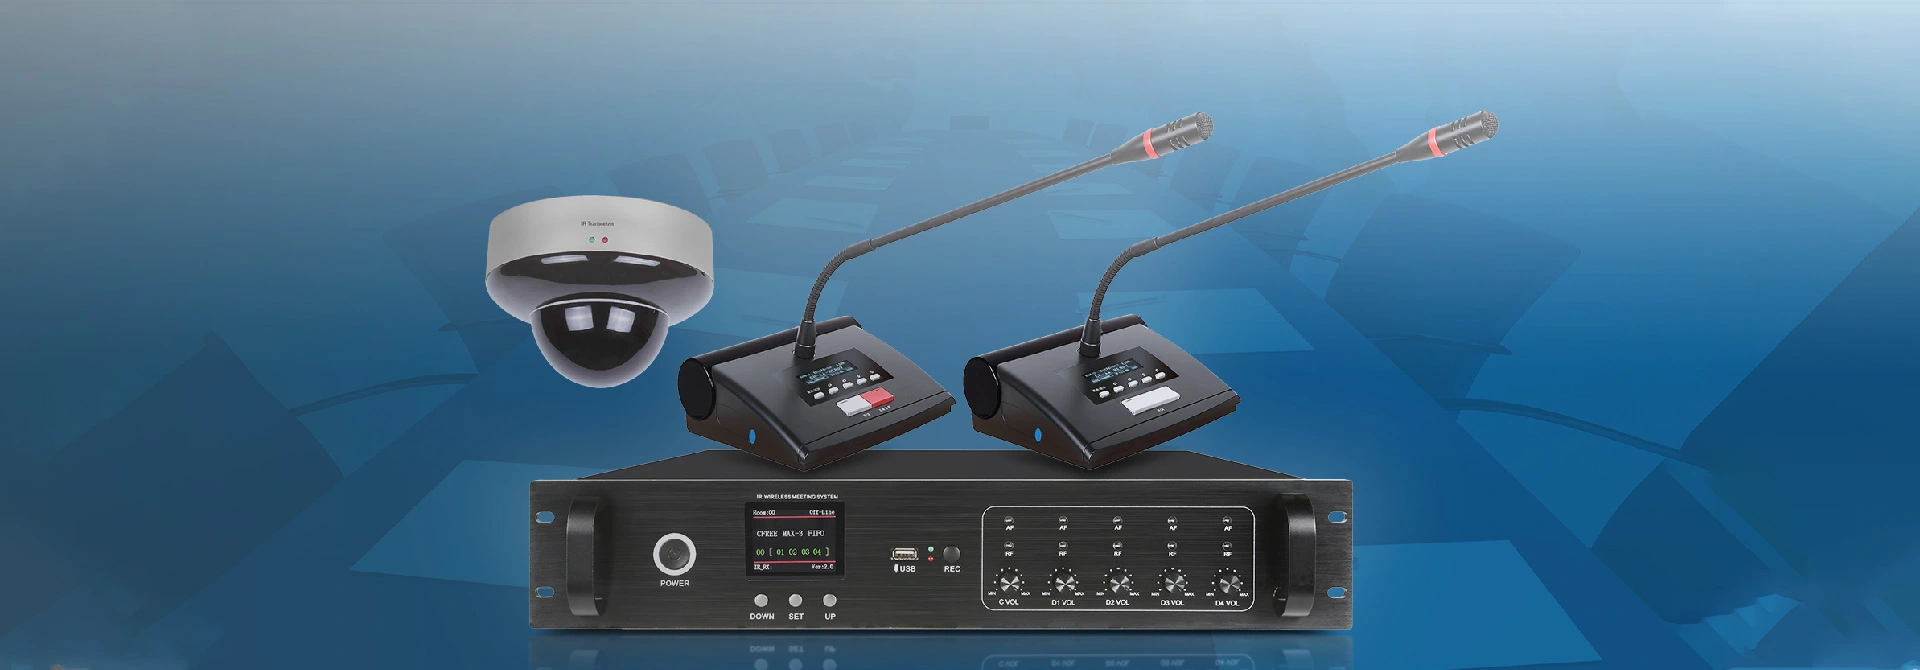 Soluzione di sistema di conferenza Wireless a infrarossi per sala conferenze D6701